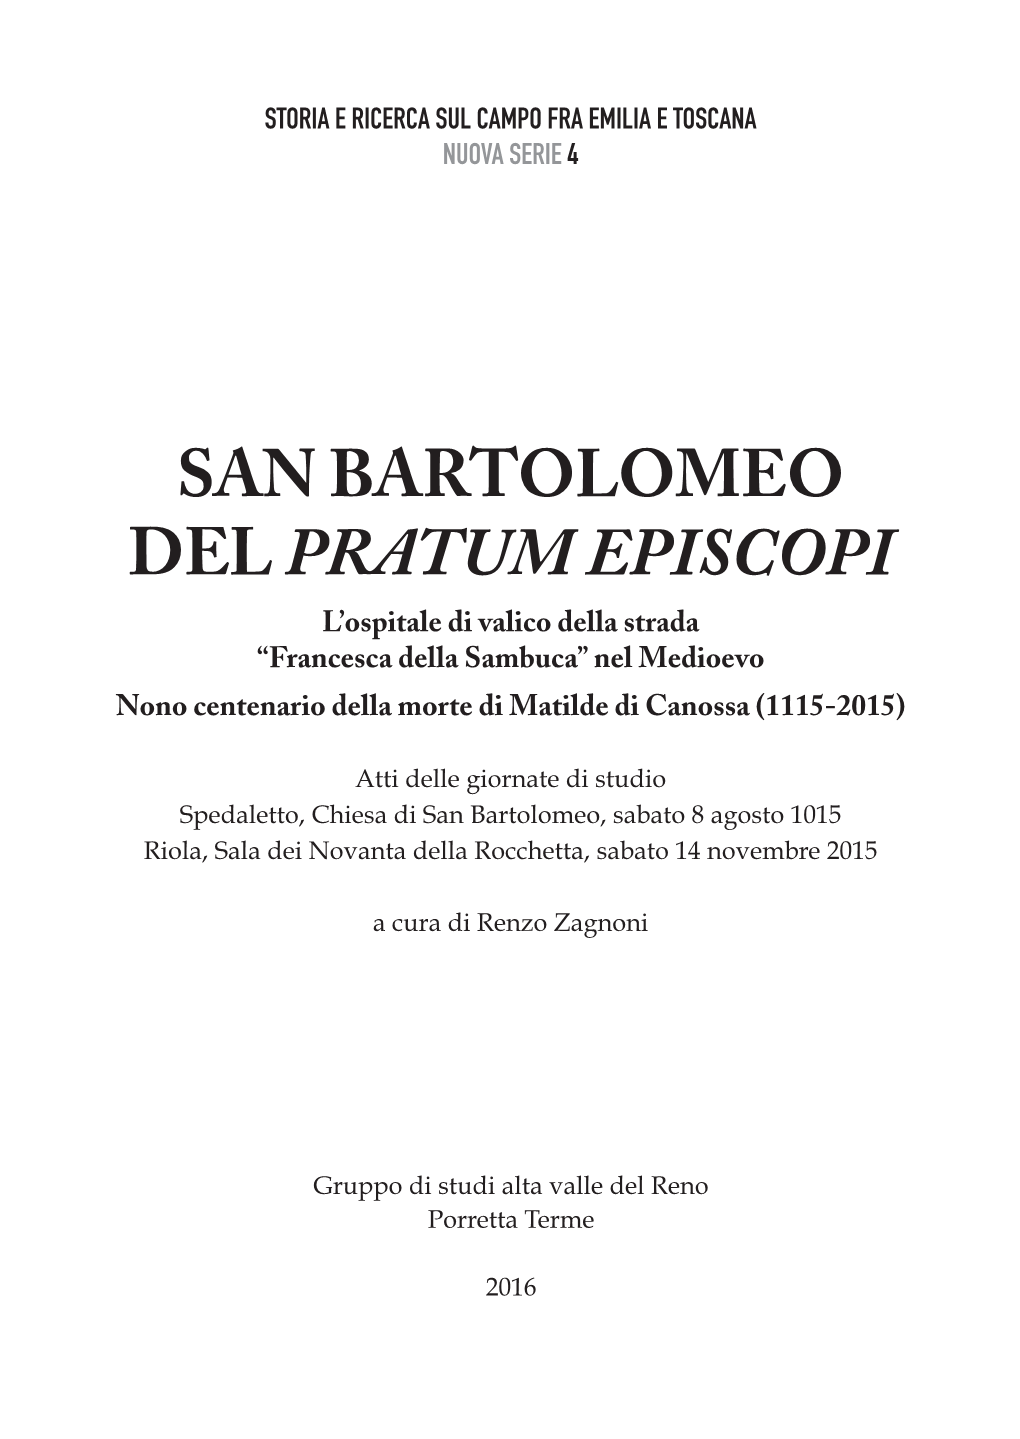 San Bartolomeo Del Pratum Episcopi